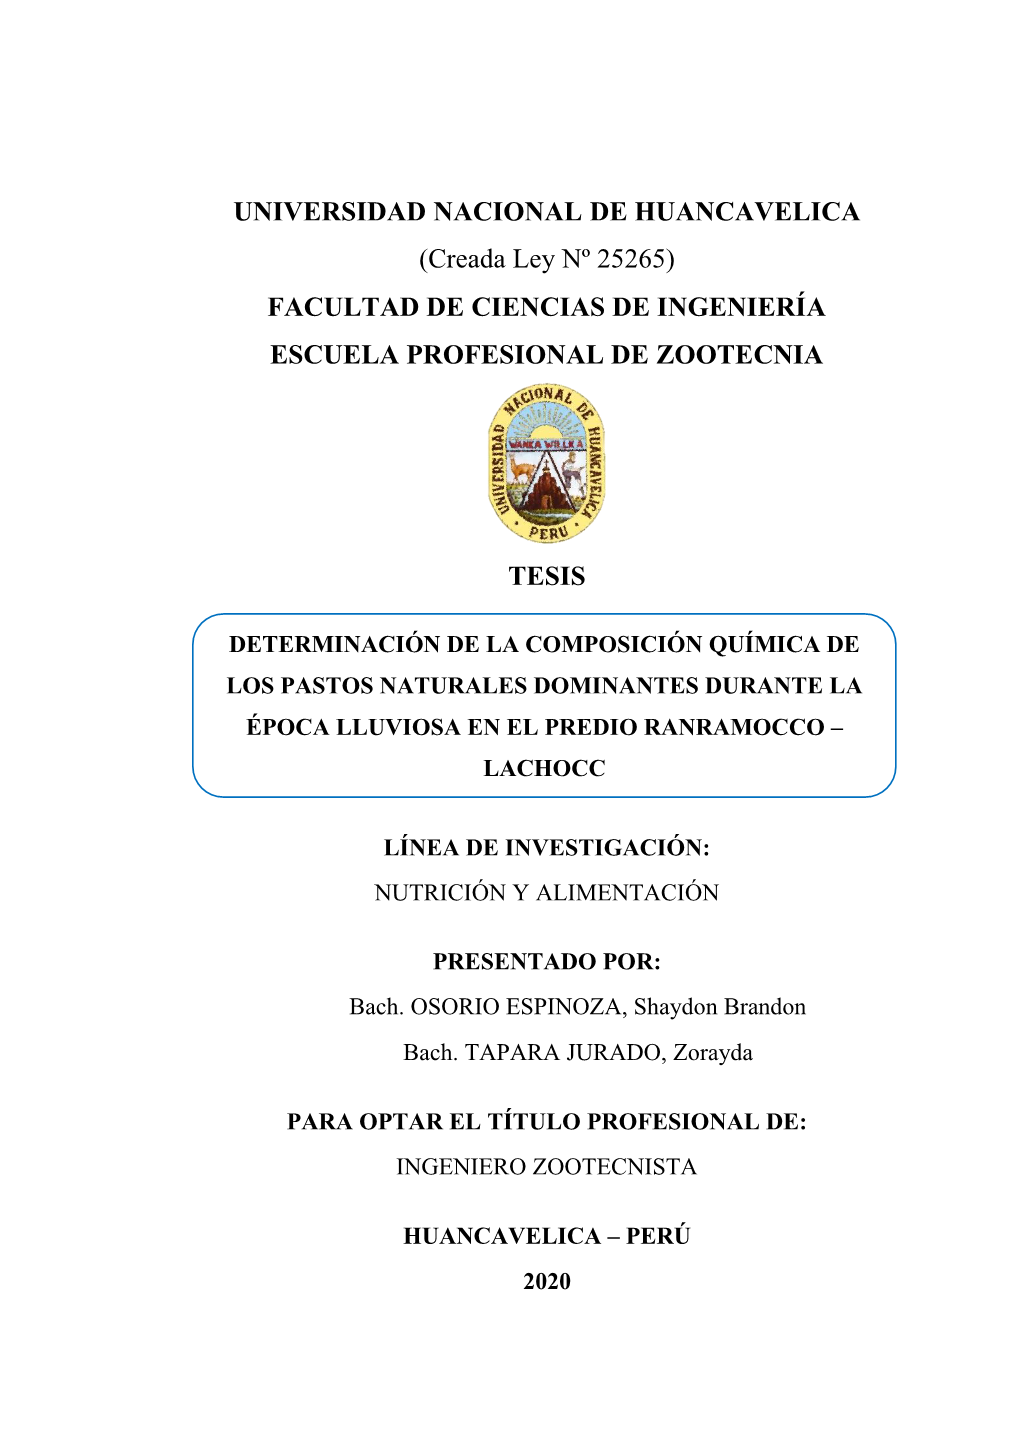 UNIVERSIDAD NACIONAL DE HUANCAVELICA (Creada Ley Nº 25265) FACULTAD DE CIENCIAS DE INGENIERÍA ESCUELA PROFESIONAL DE ZOOTECNIA